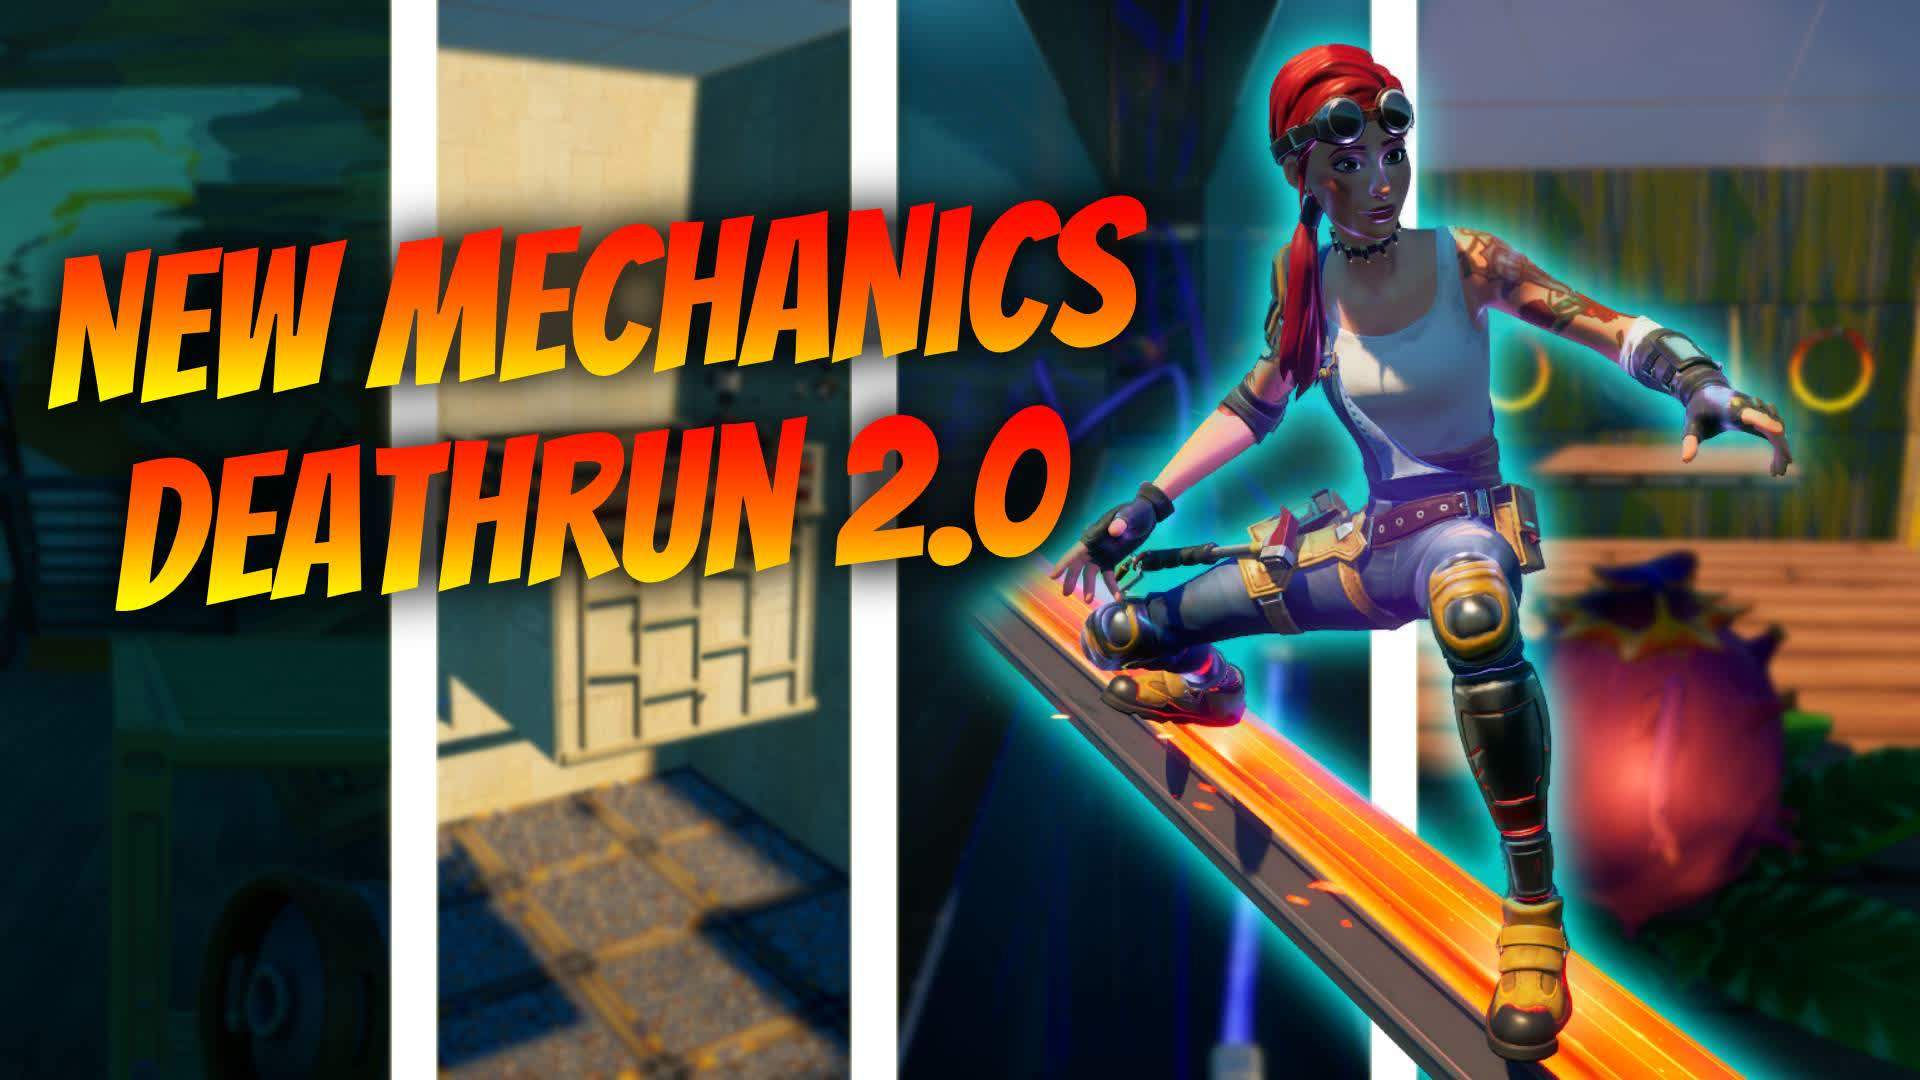 The New Mechanics Deathrun 2.0